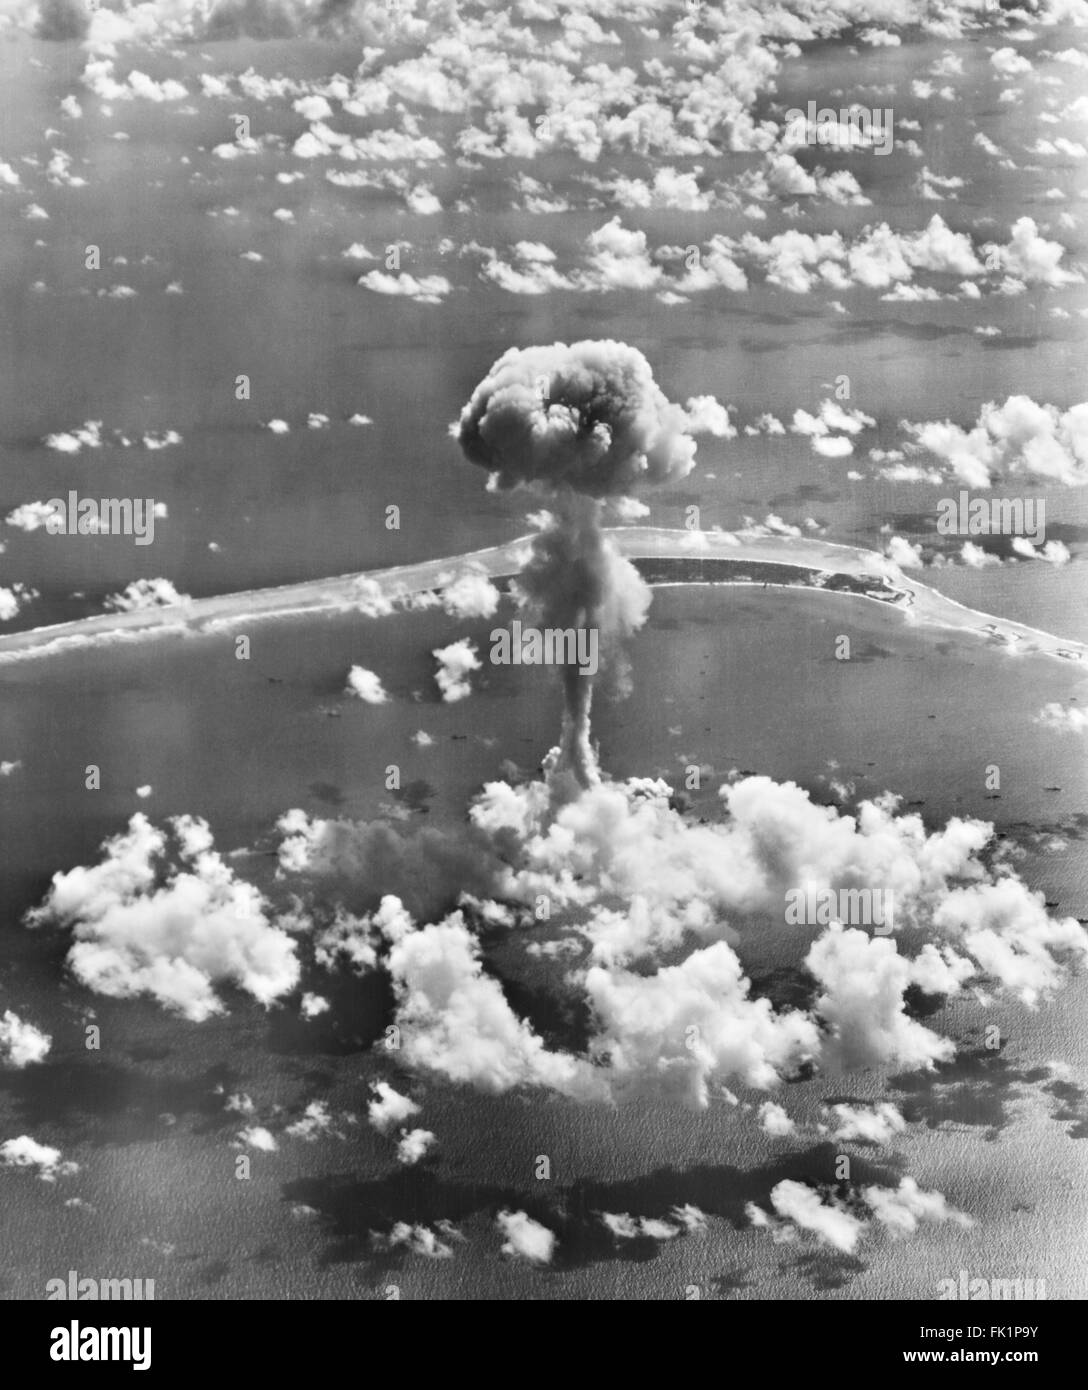 Champignon atomique de l'opération Crossroads les essais d'armes à l'atoll de Bikini, dans les Îles Marshall, l'océan Pacifique en juillet 1946. Banque D'Images